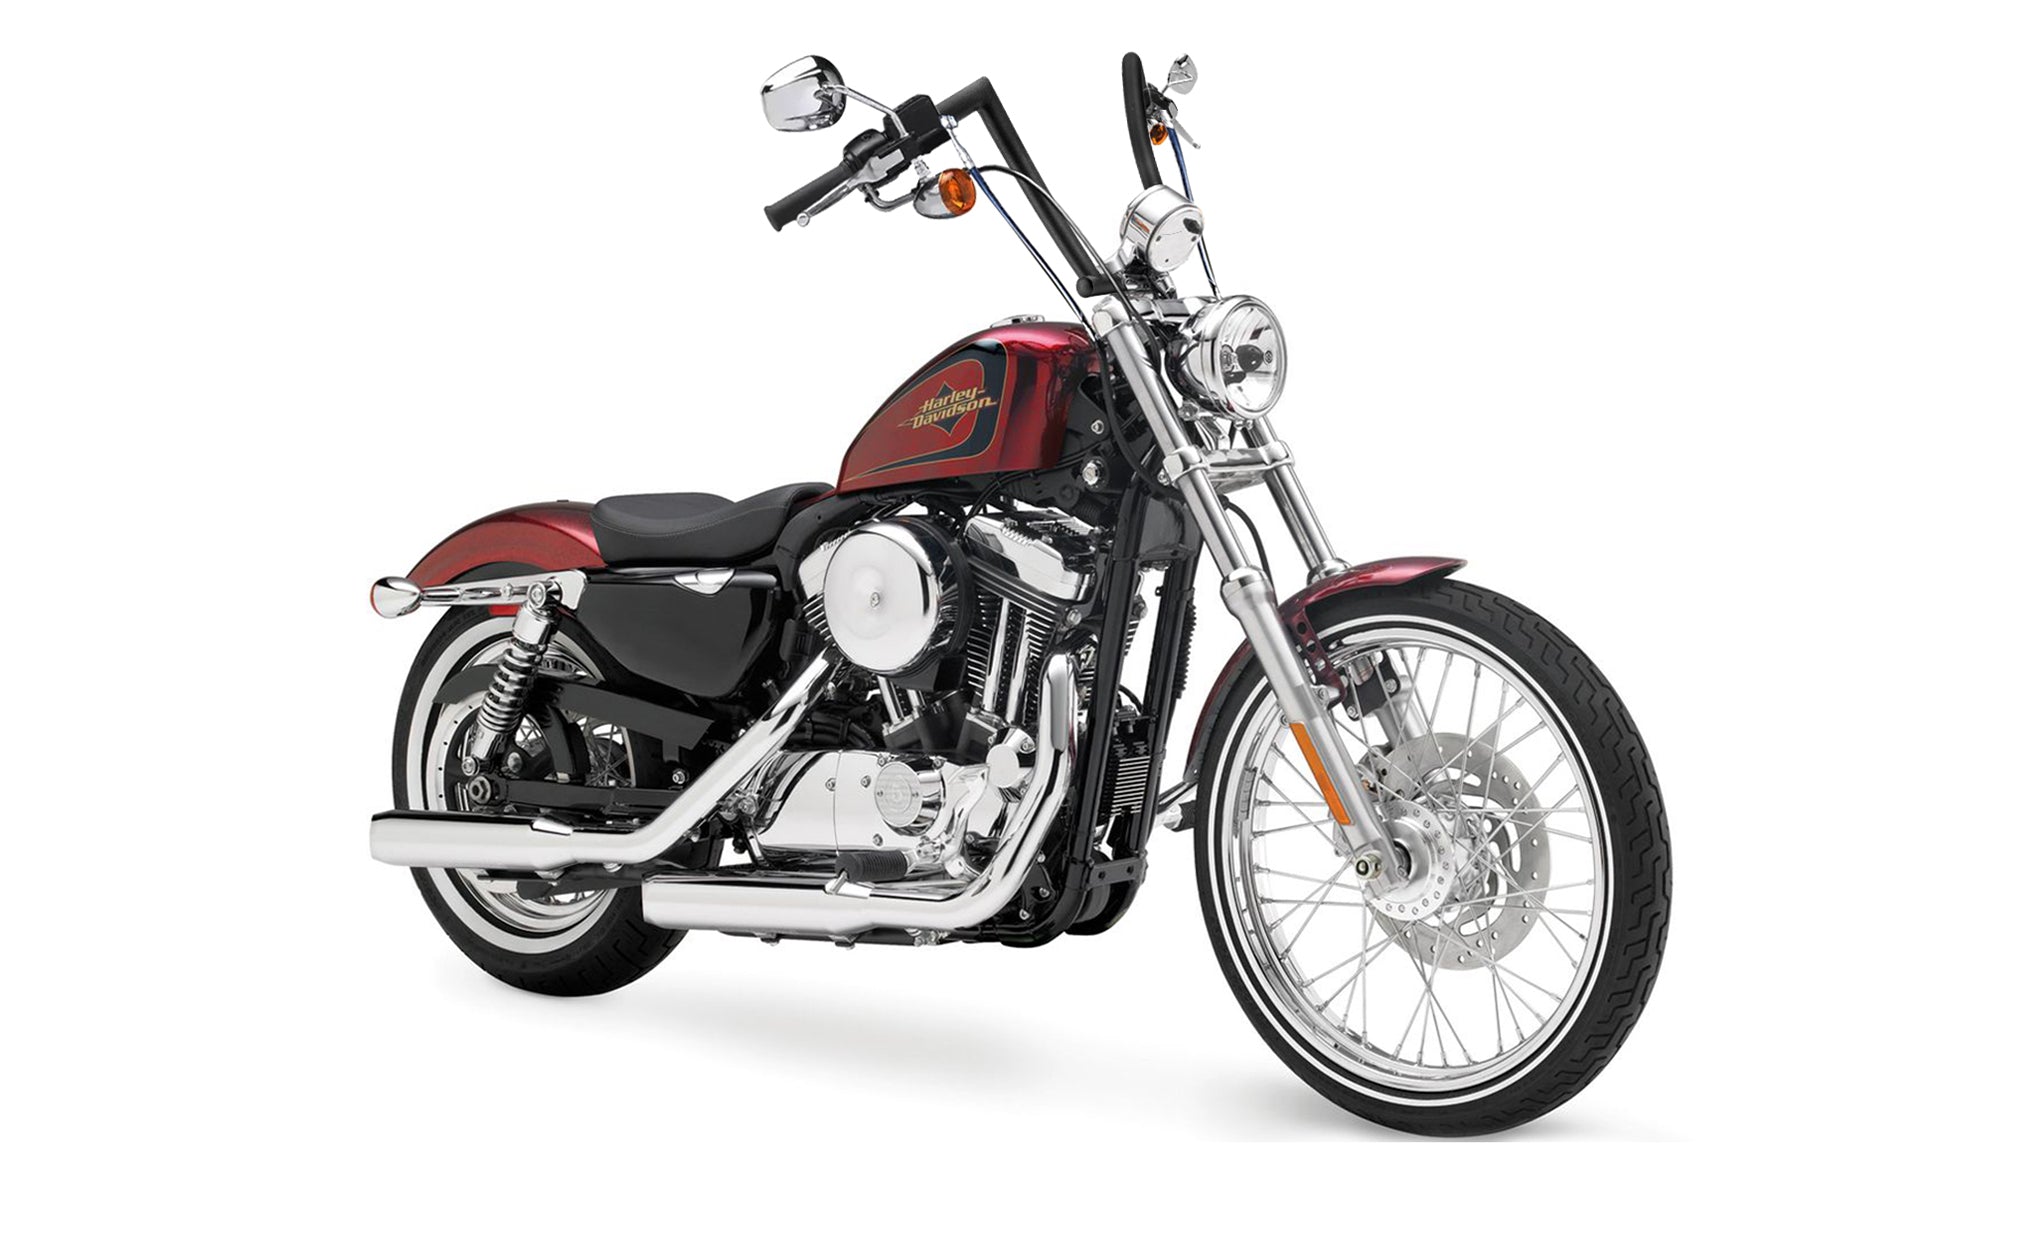 Viking Iron Born 9" Handlebar for Harley Sportster Seventy Two Matte Black Bag on Bike View @expand